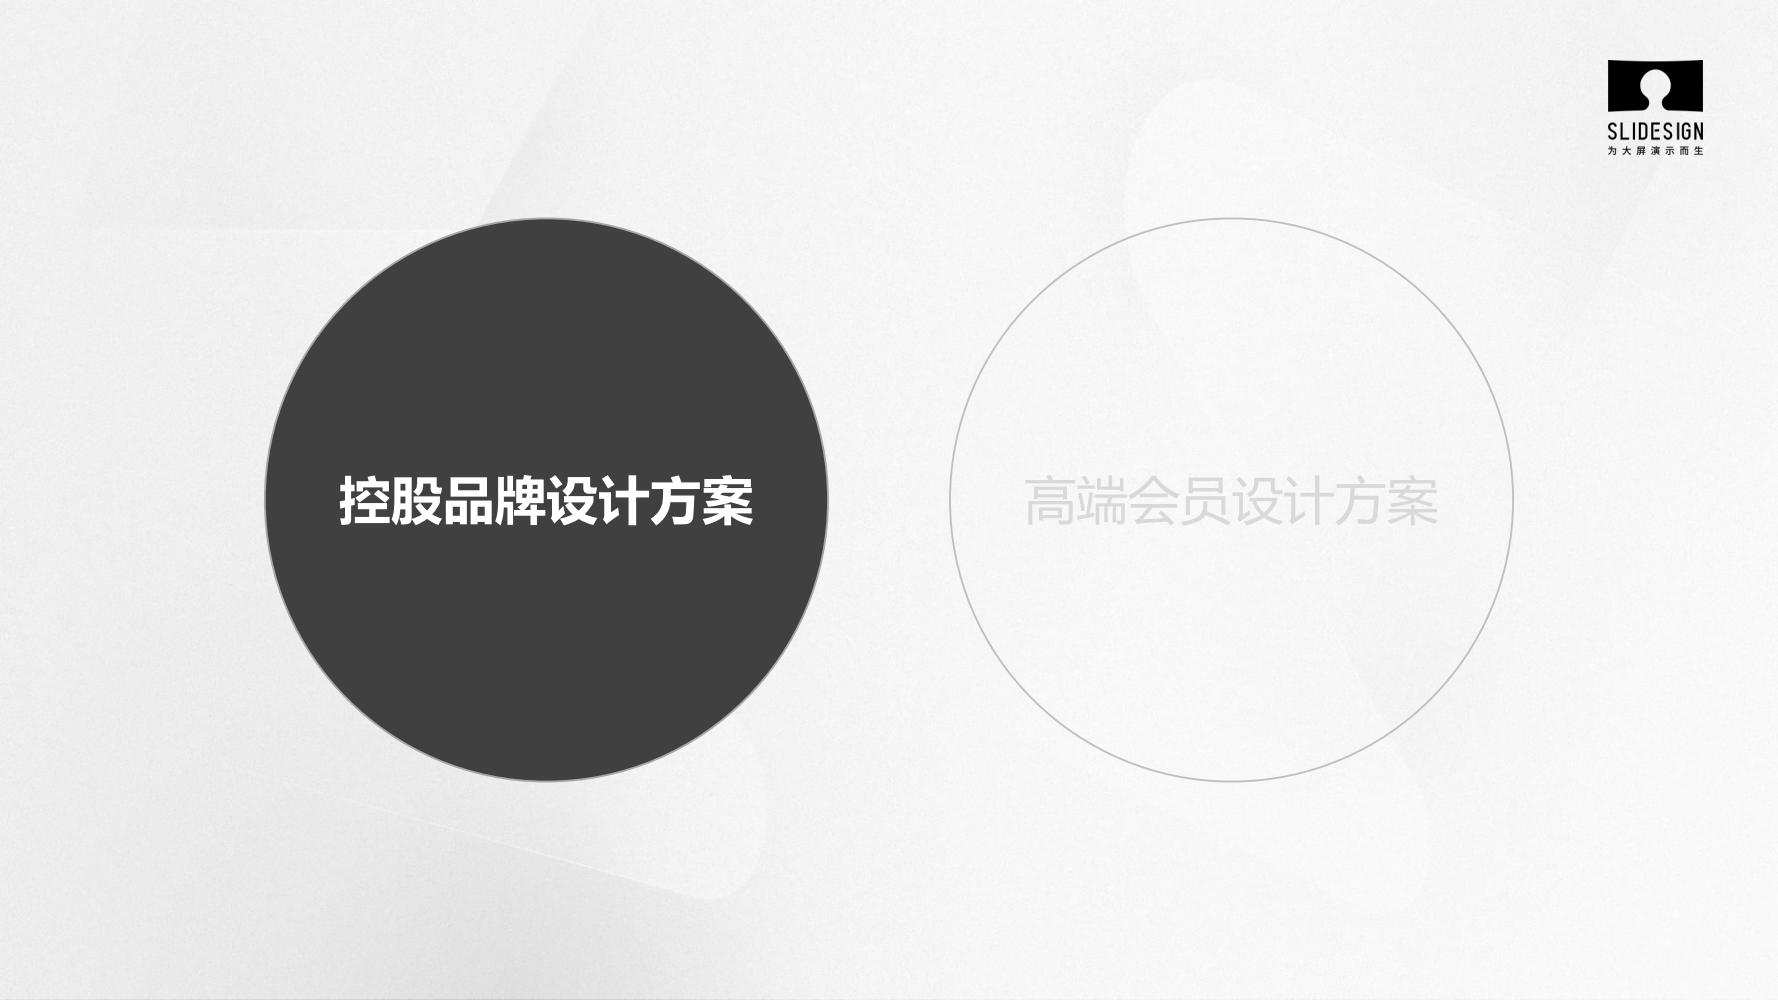 【夺幕 SLIDESIGN】星河控股集团品牌设计方案_01.jpg